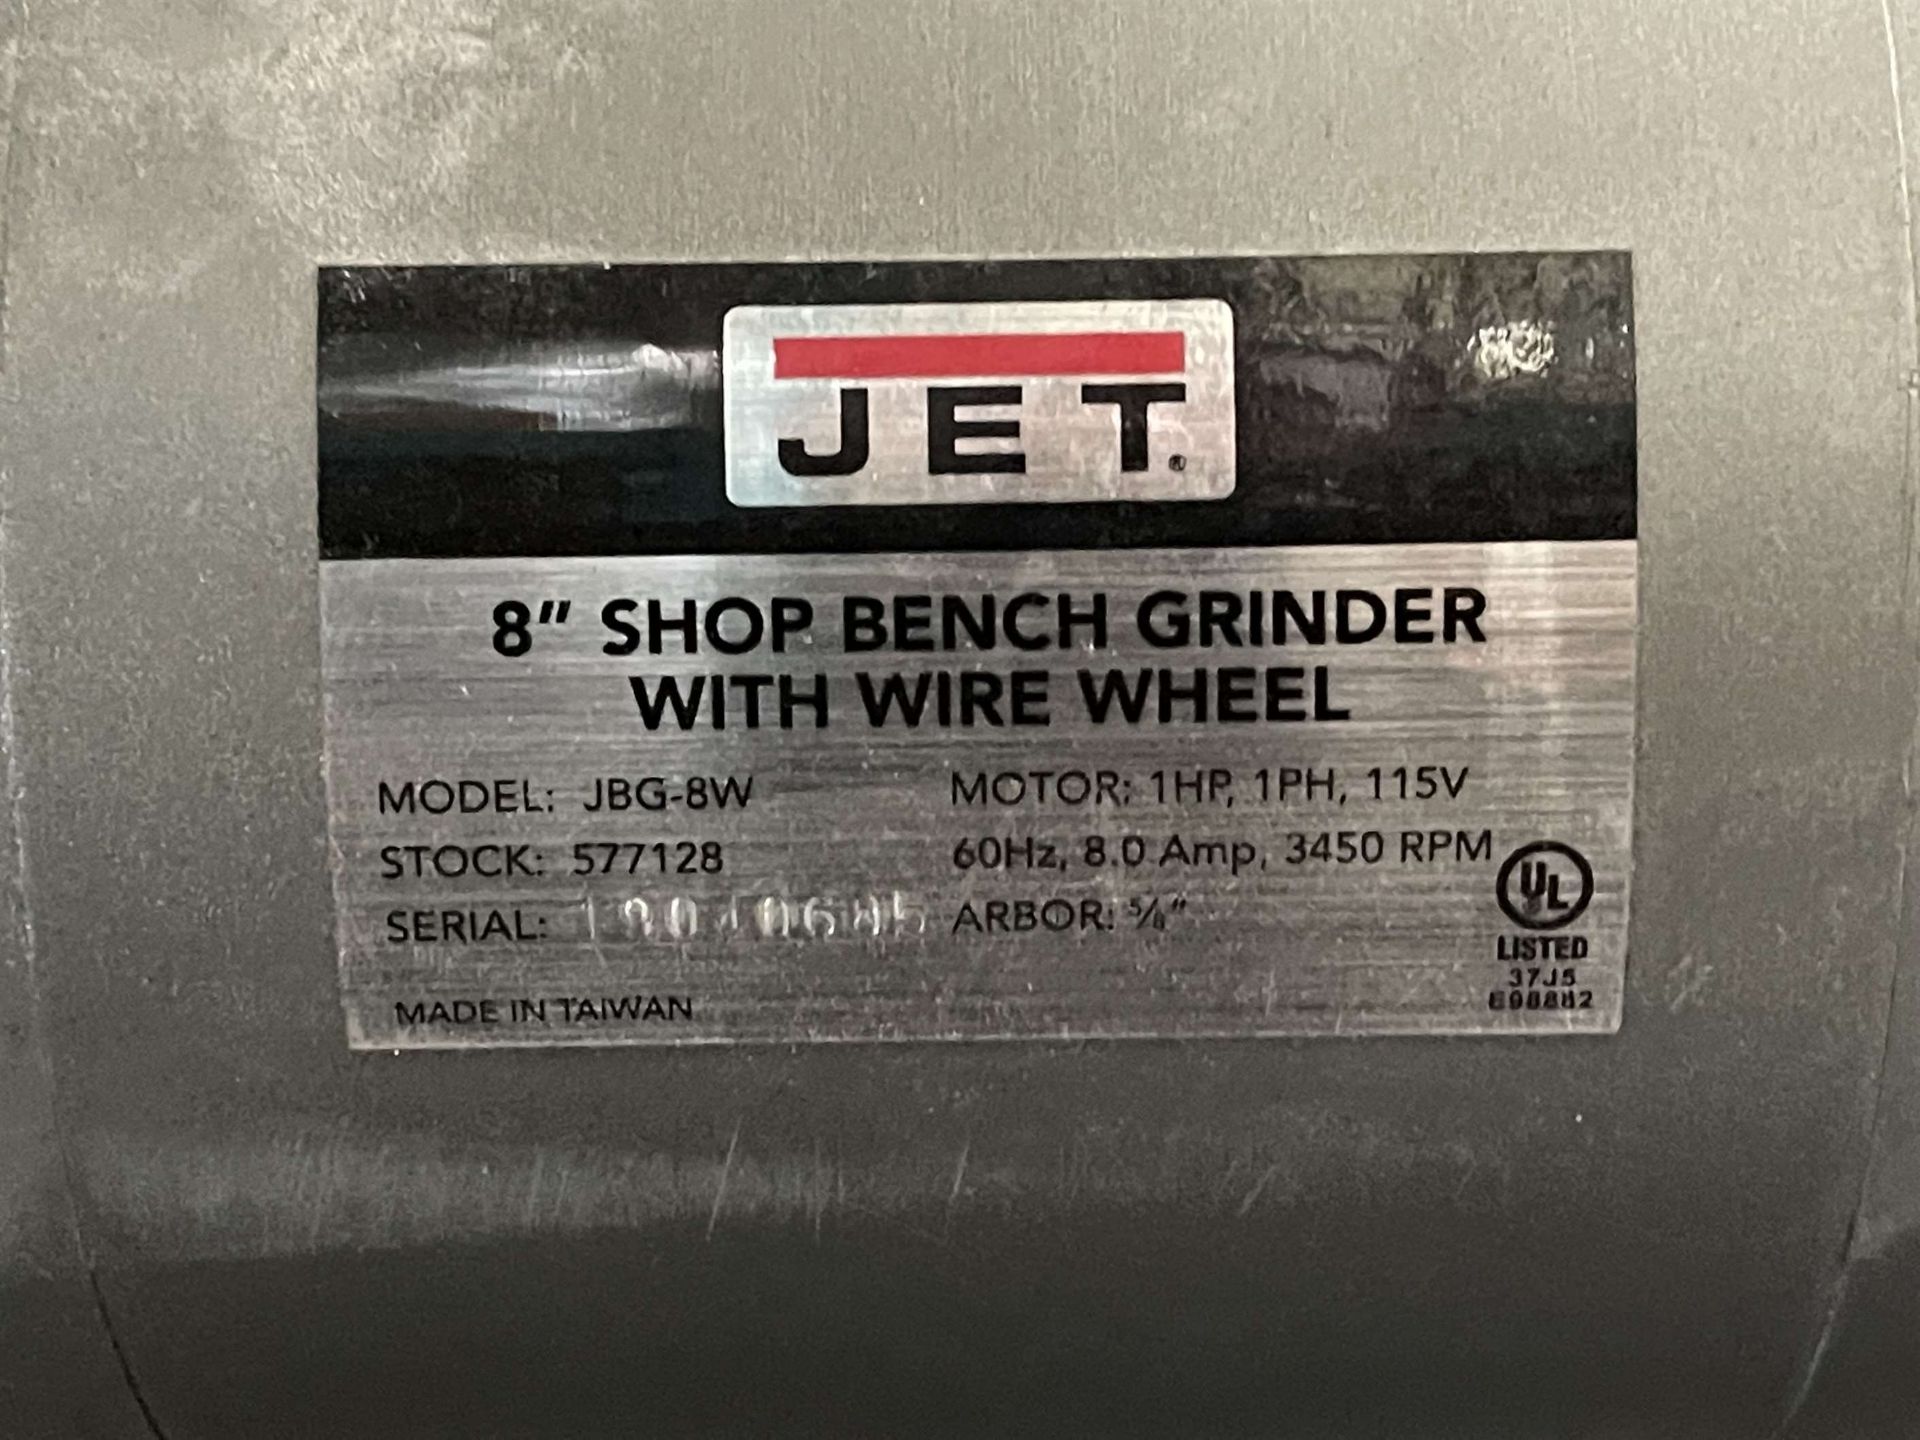 JET JBG-8W Wire Wheel Pedestal Grinder, s/n na, 1 HP, 3450 RPM, Single Phase, 115V - Image 4 of 4